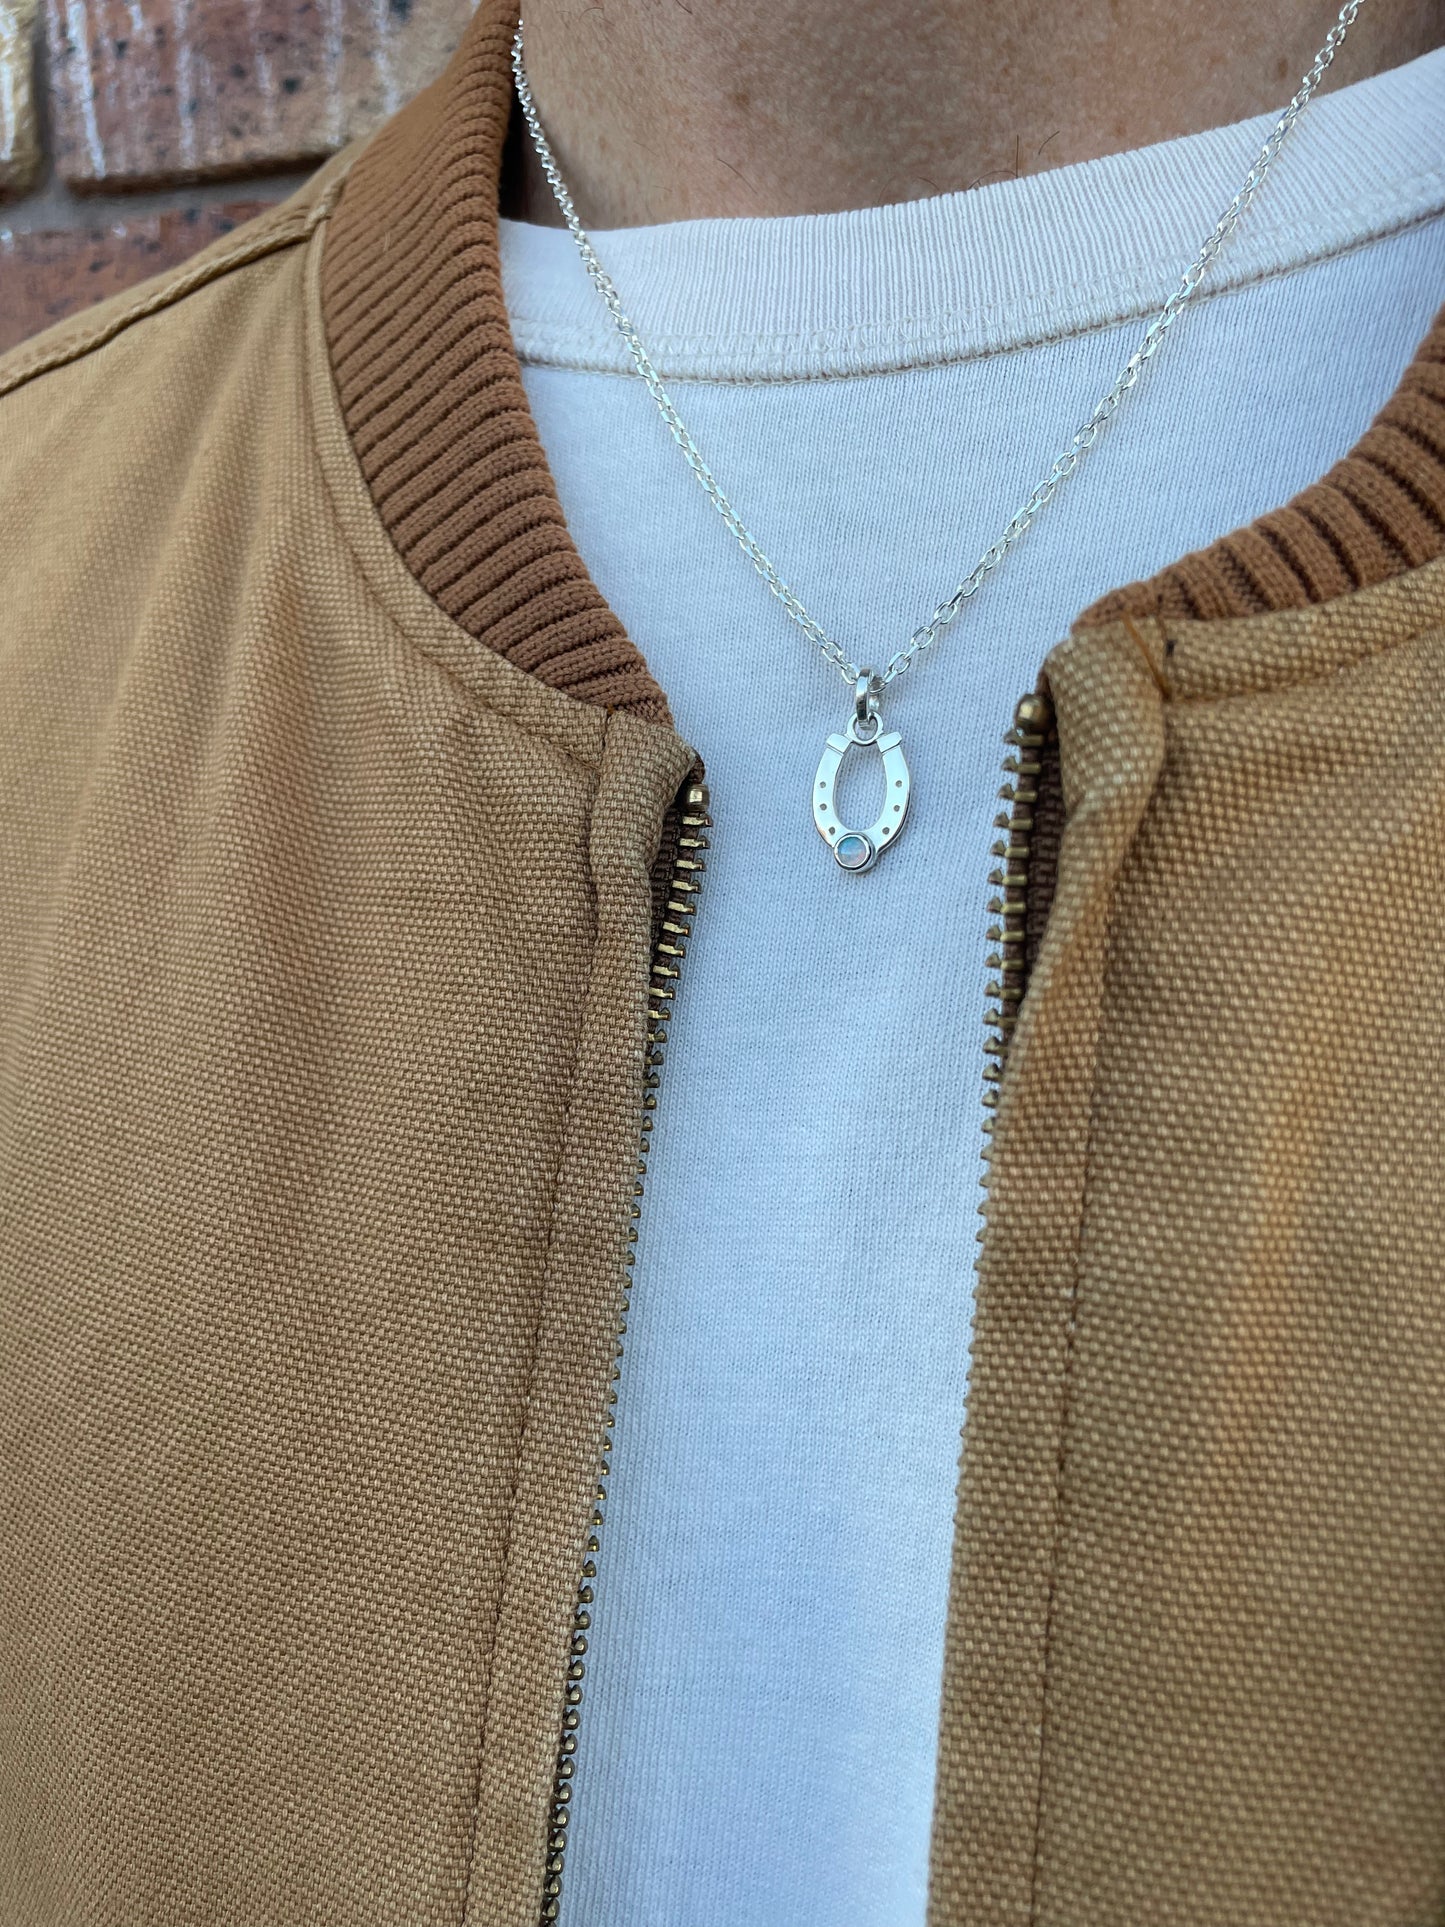 Opal Horseshoe Necklace